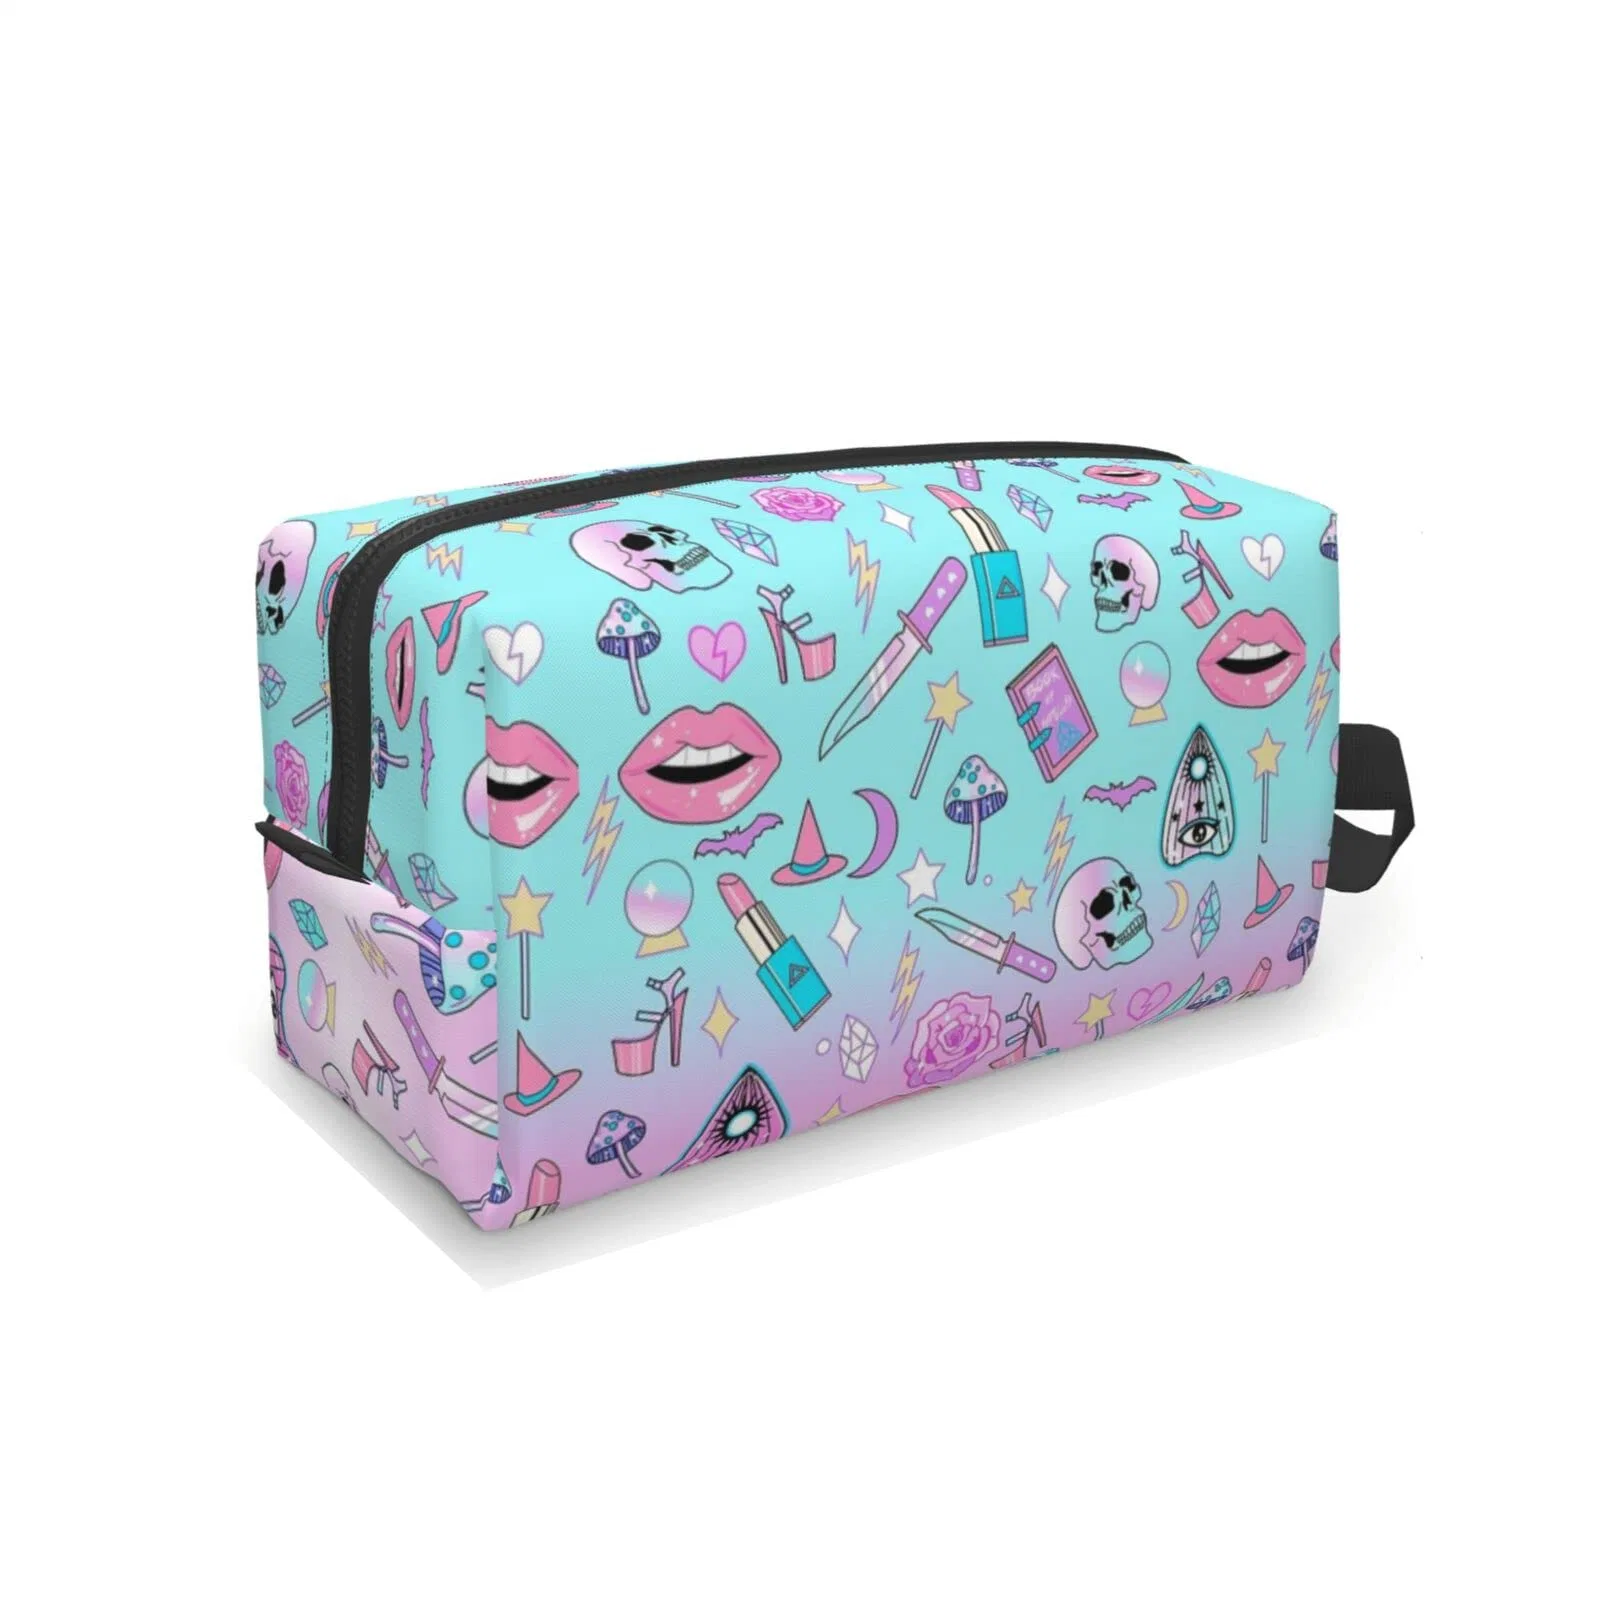 Портативный Колдунья Goth мешок для макияжа поездки косметические сумки для женщин девочек большой набор туалетных принадлежностей чехол водонепроницаемый молнией аксессуары подарки